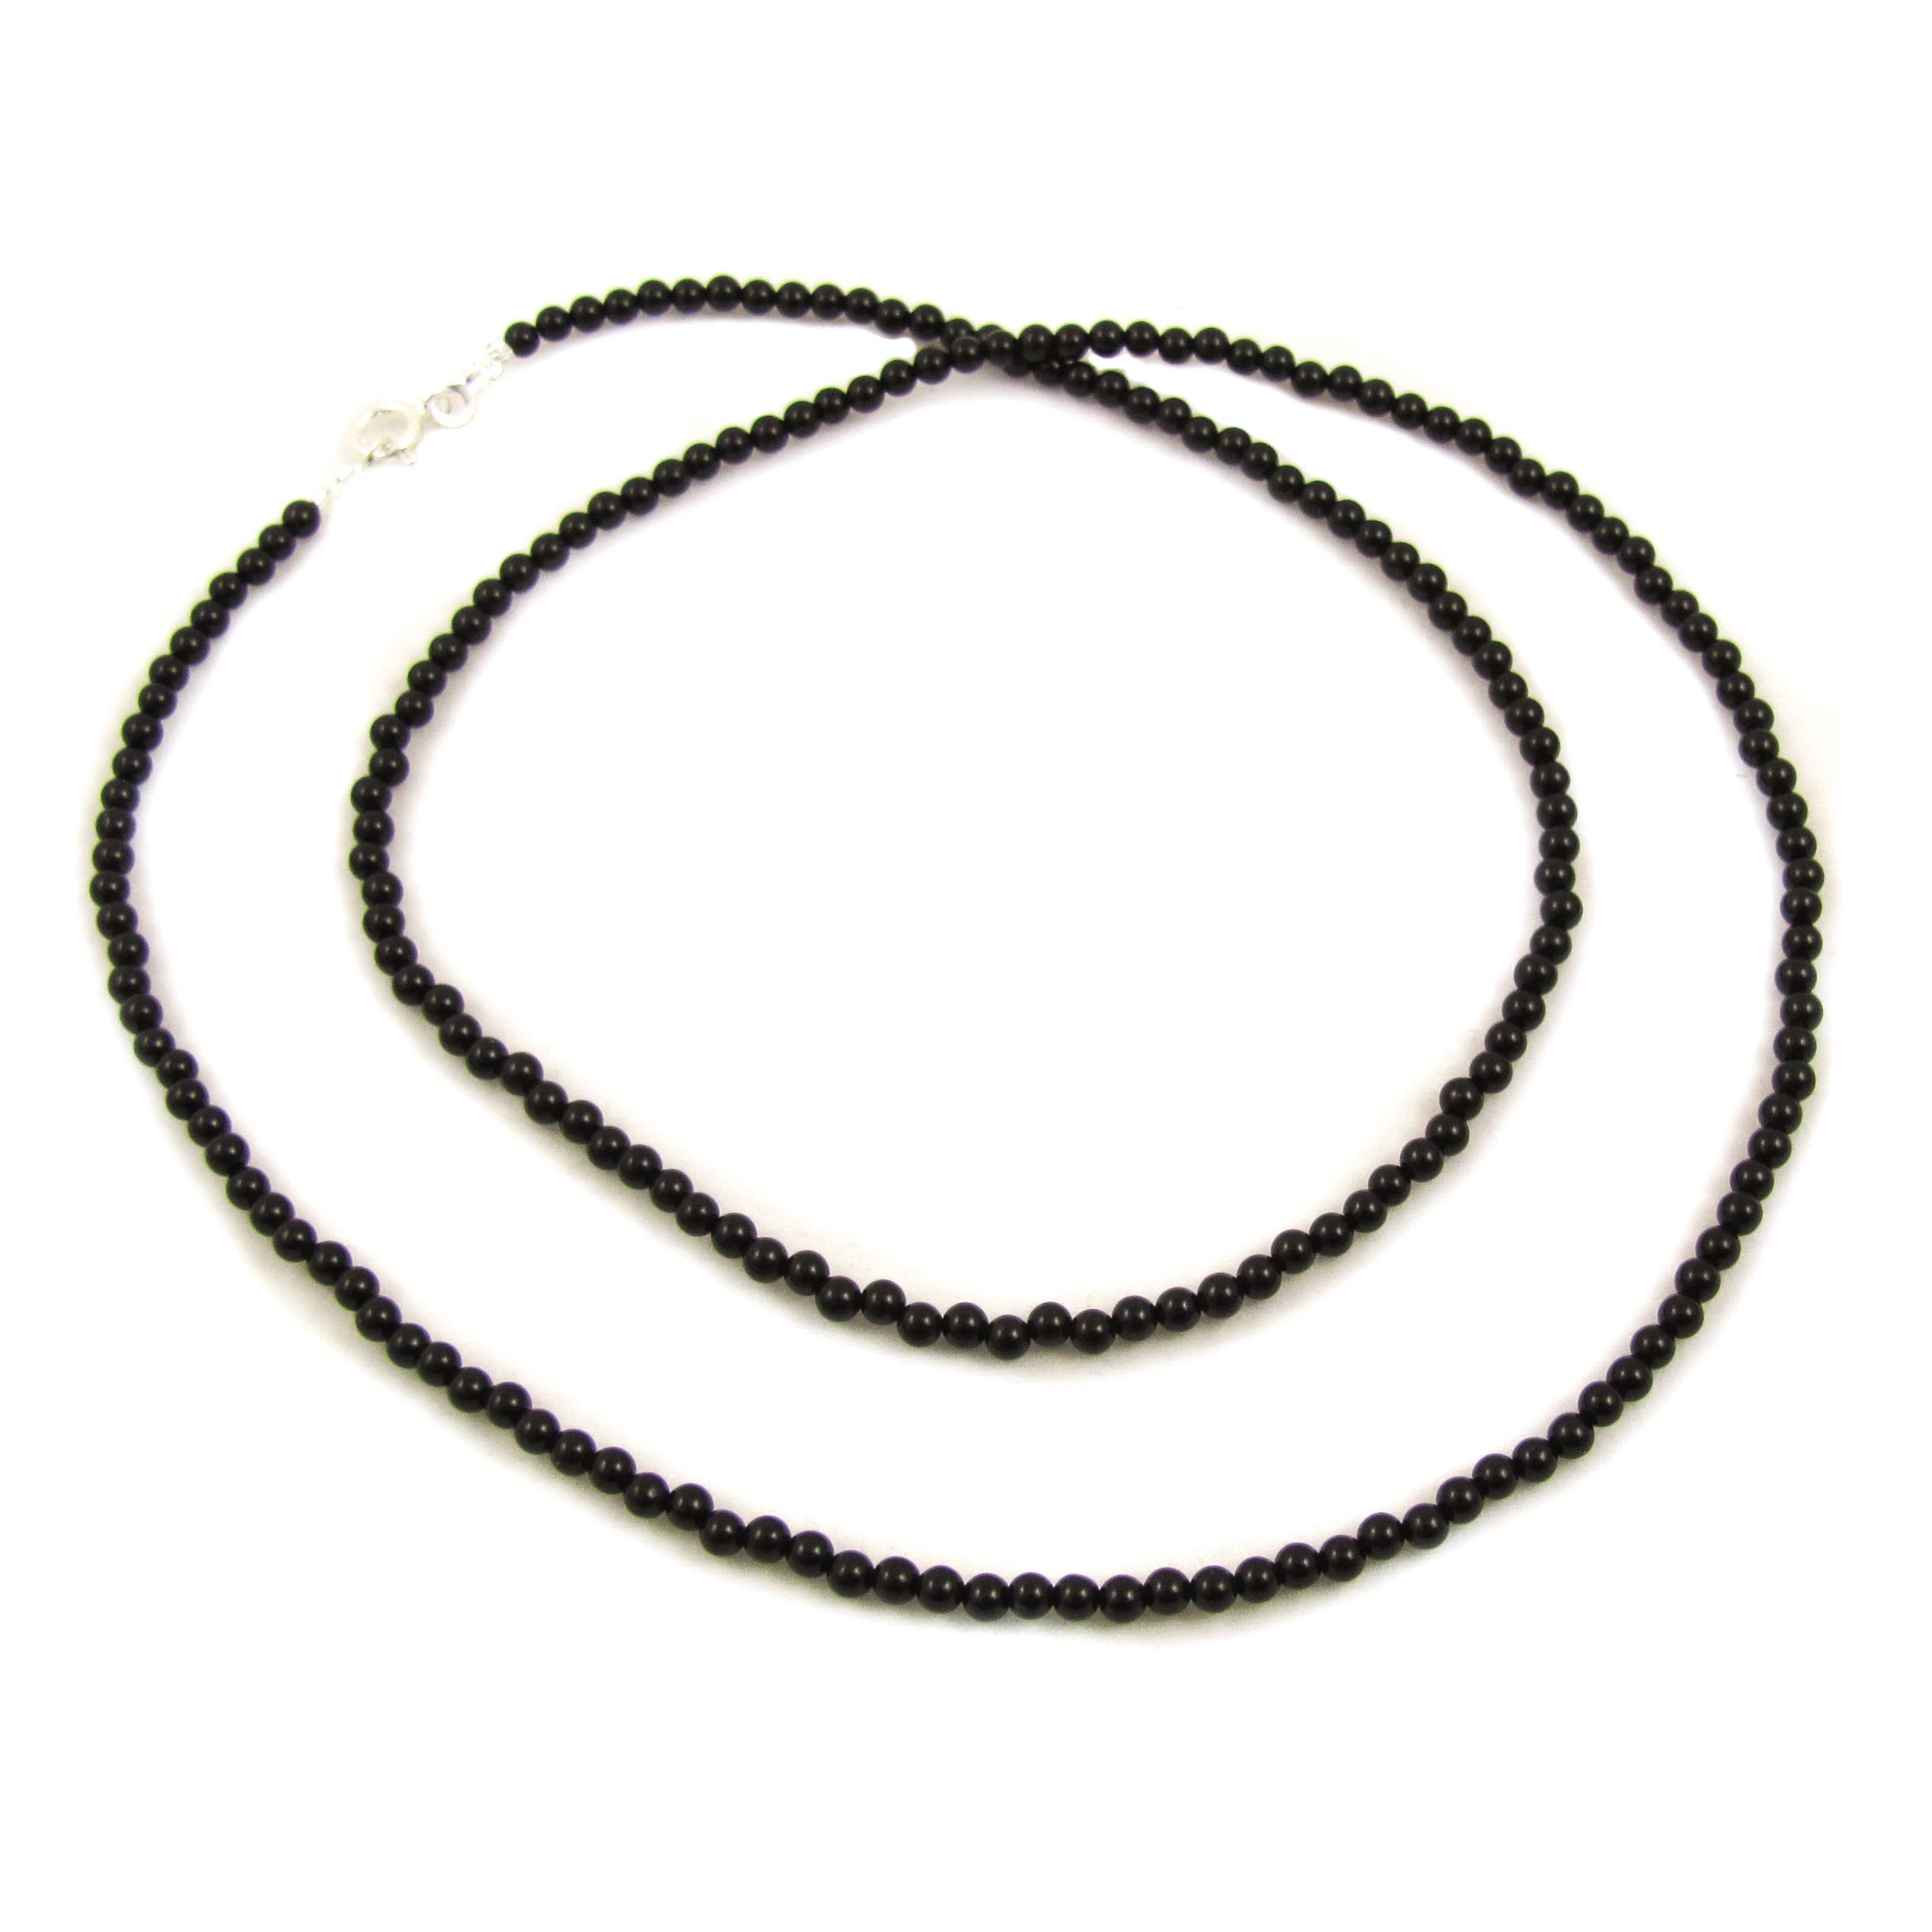 Onyx Edelstein Kette mit edlen 3 mm Kugeln, 60 cm - Schutz